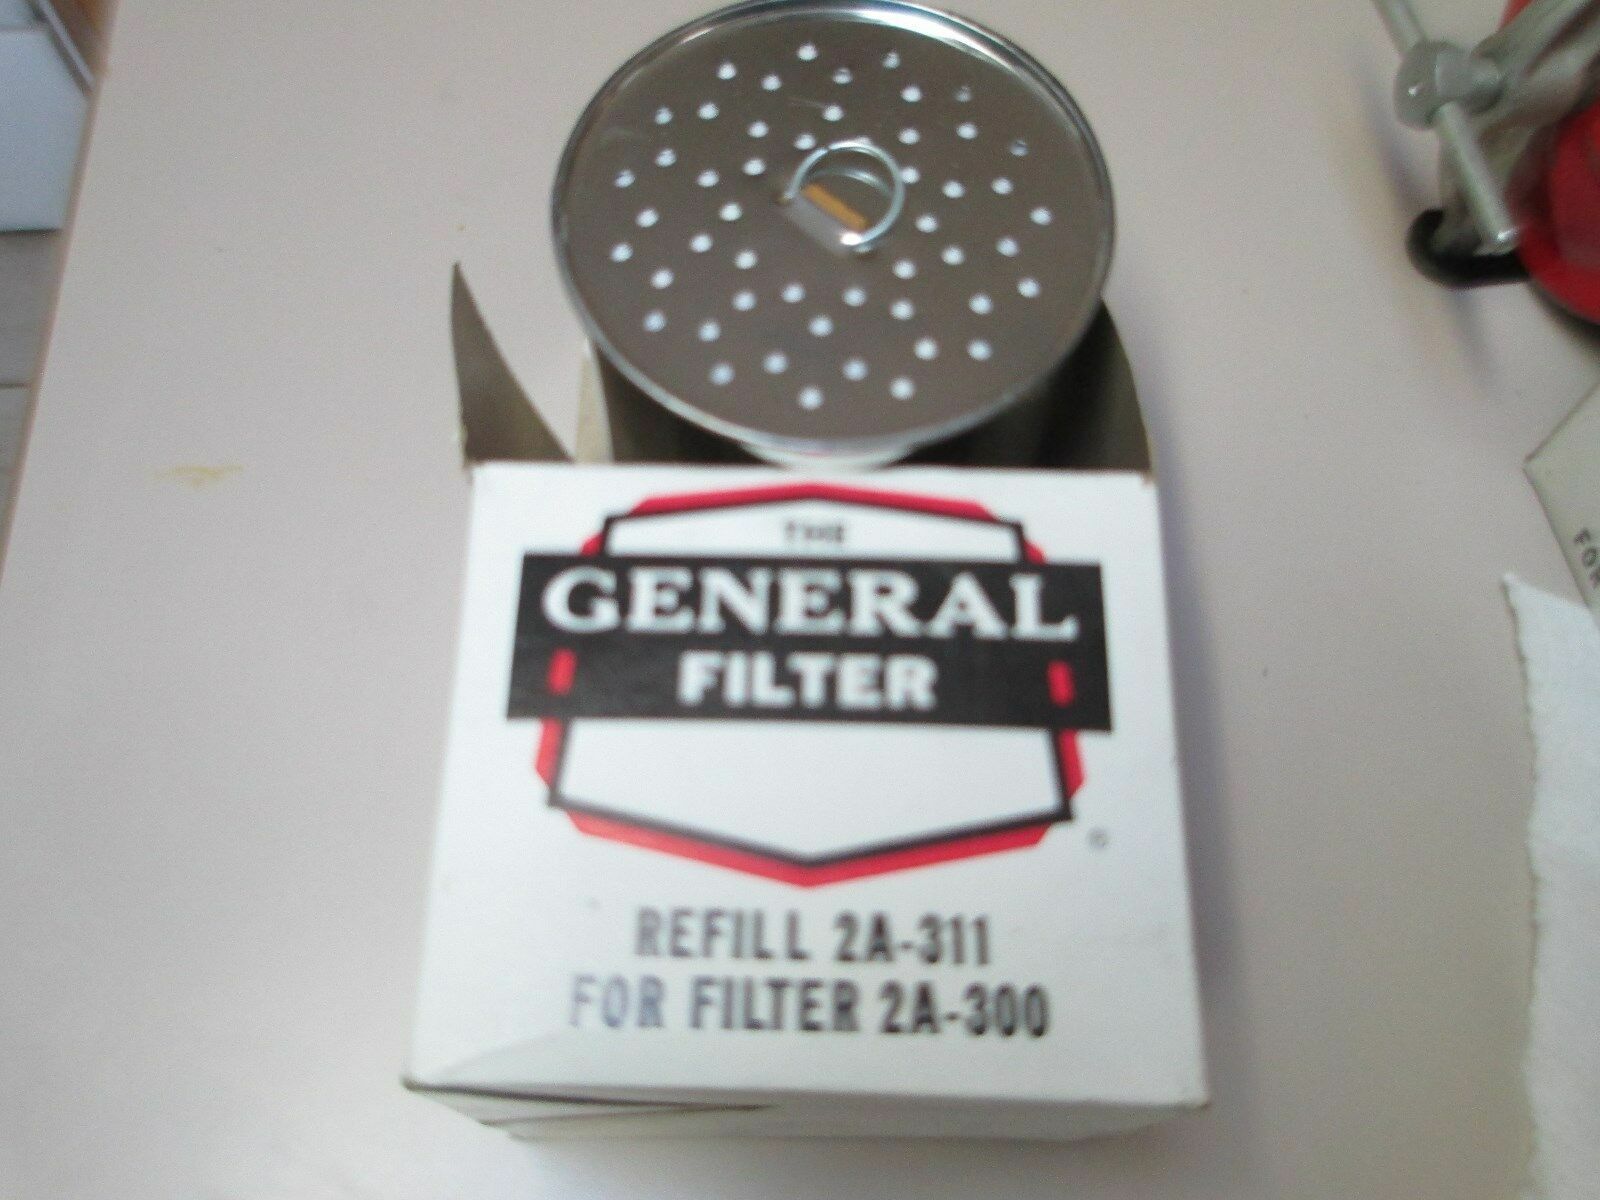 Vintage NOS General Filter Oil Filter  Model 2A-311  #406928 fits 2A-300